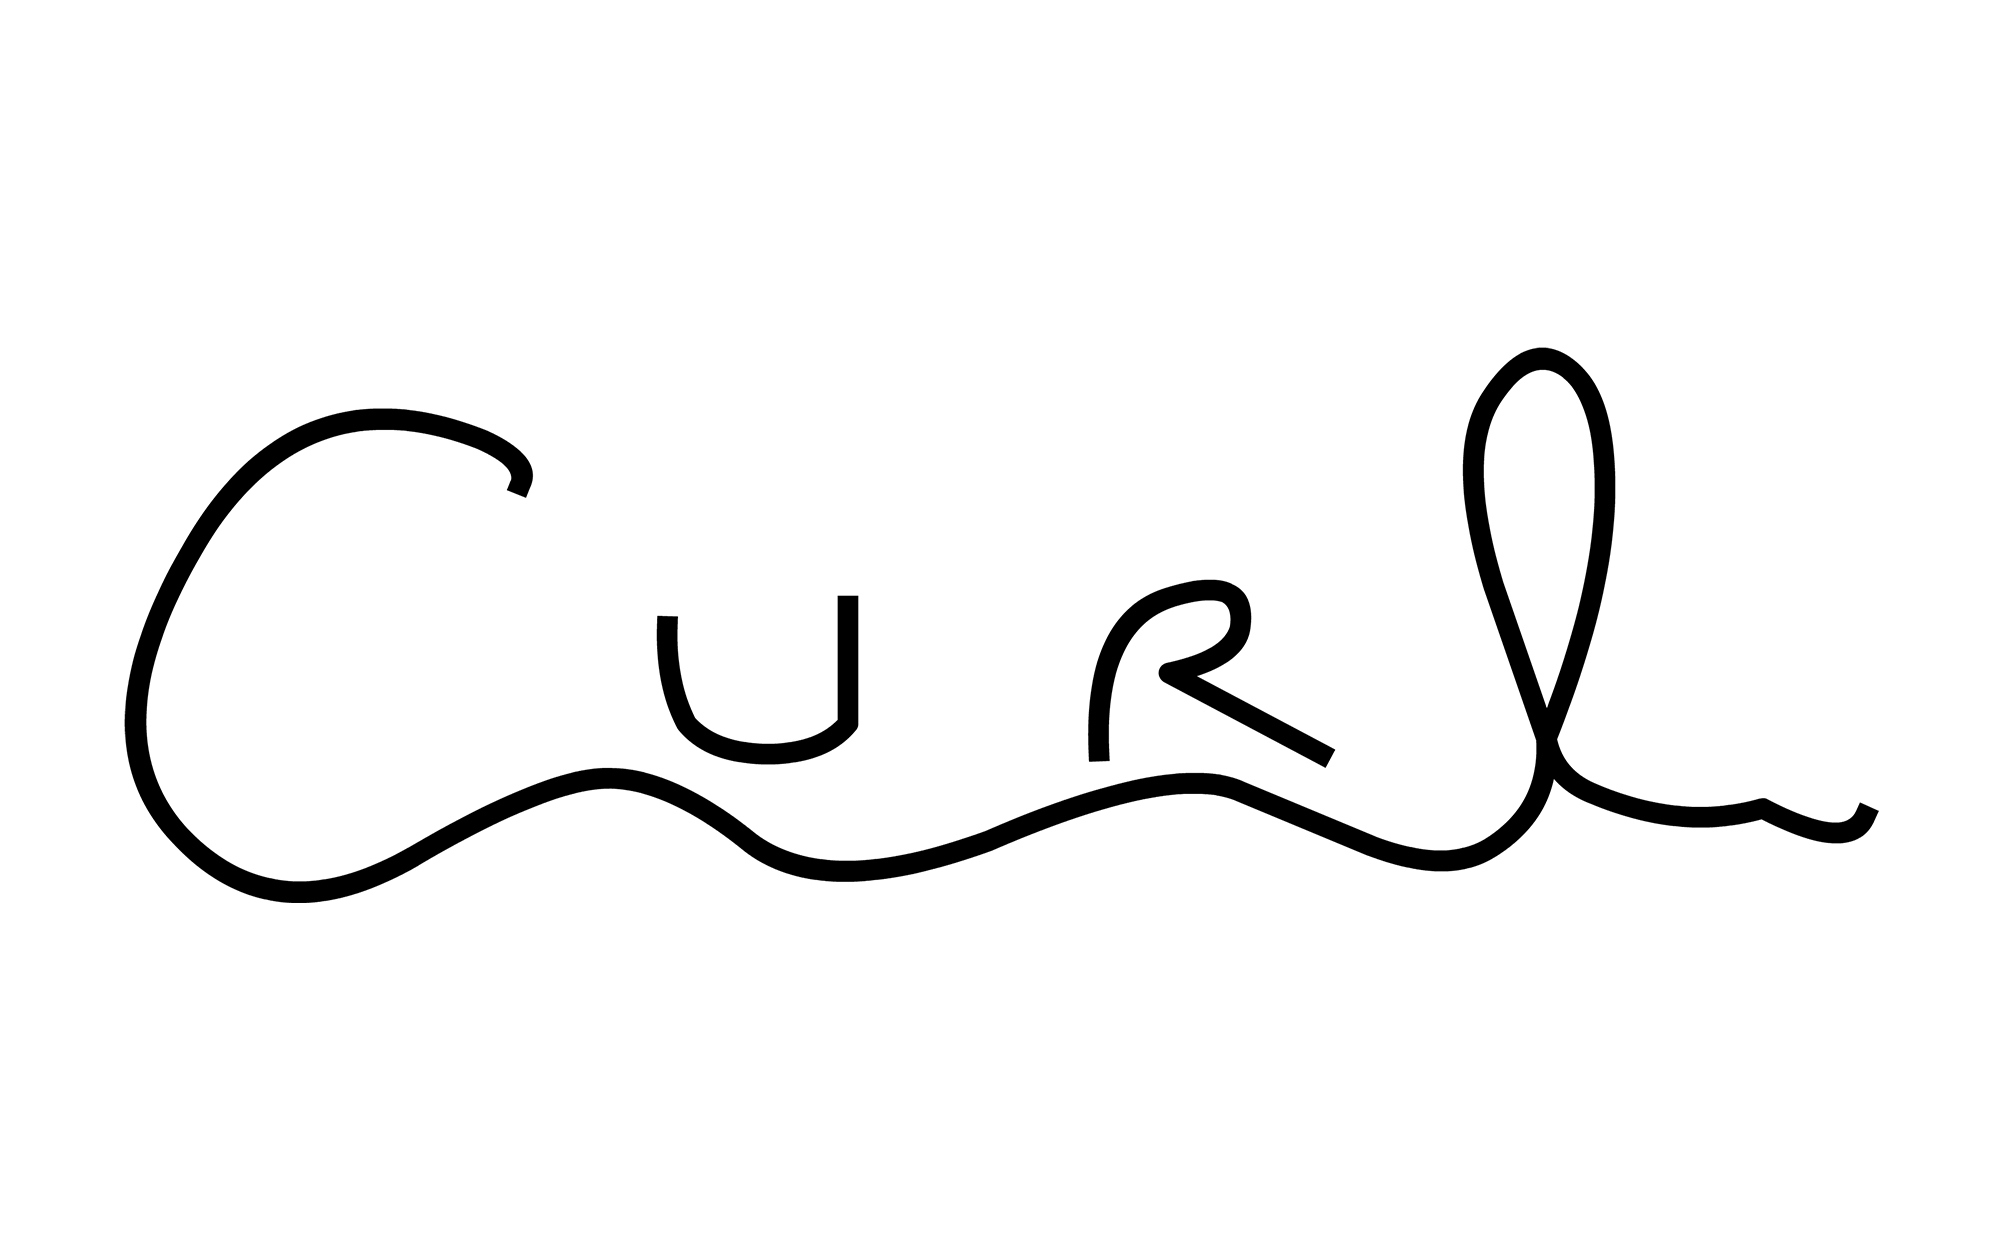 C-Curl Single Length 0.20 – EBALIDA